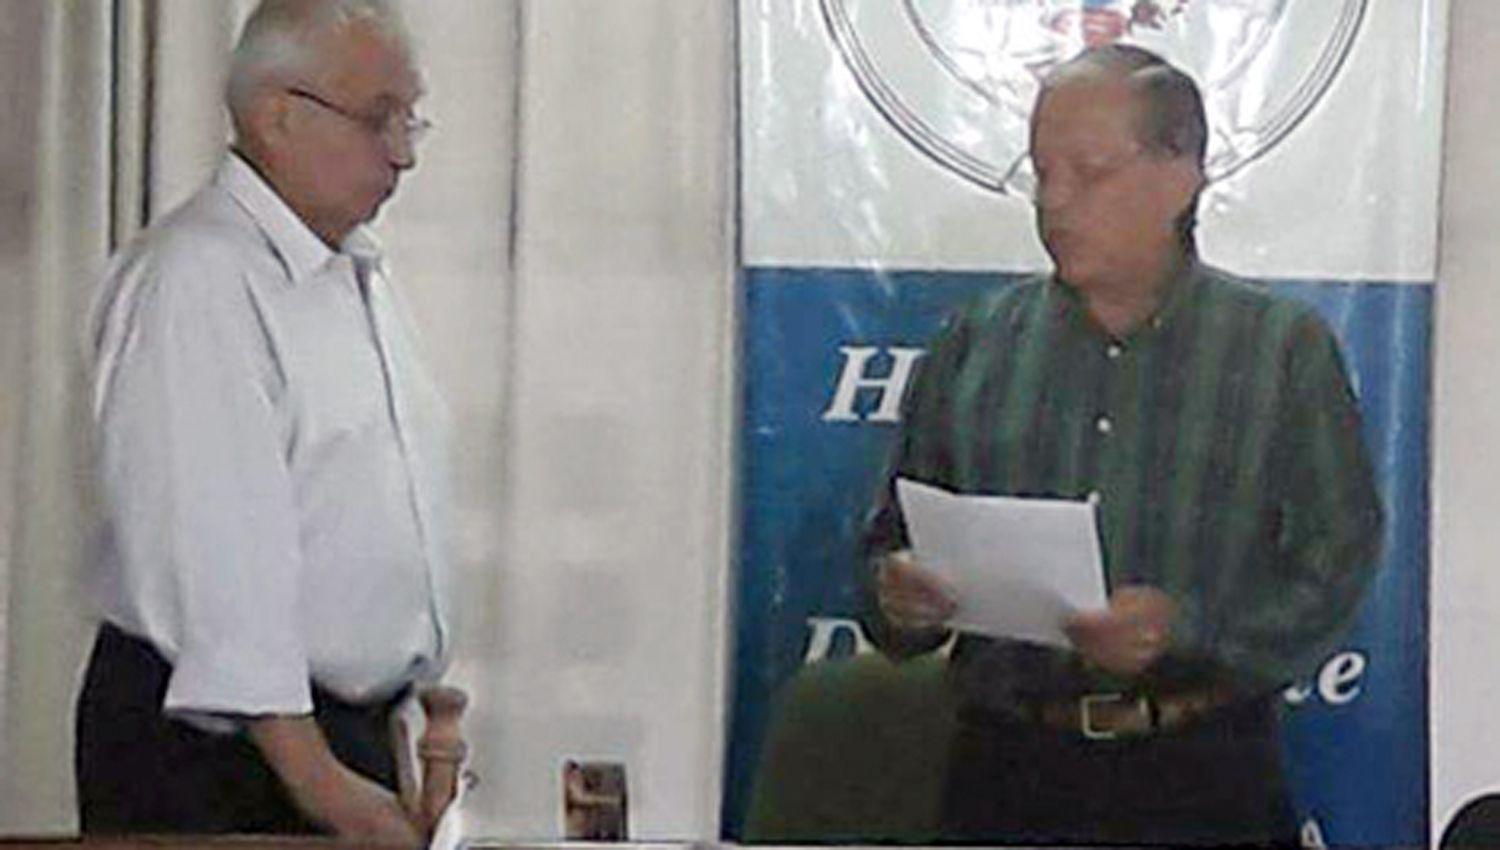 El Dr Hugo Su�rez fue propuesto por algunos miembros del bloque
oficialista del Movimiento Vecinal y Popular para ocupar la presidencia